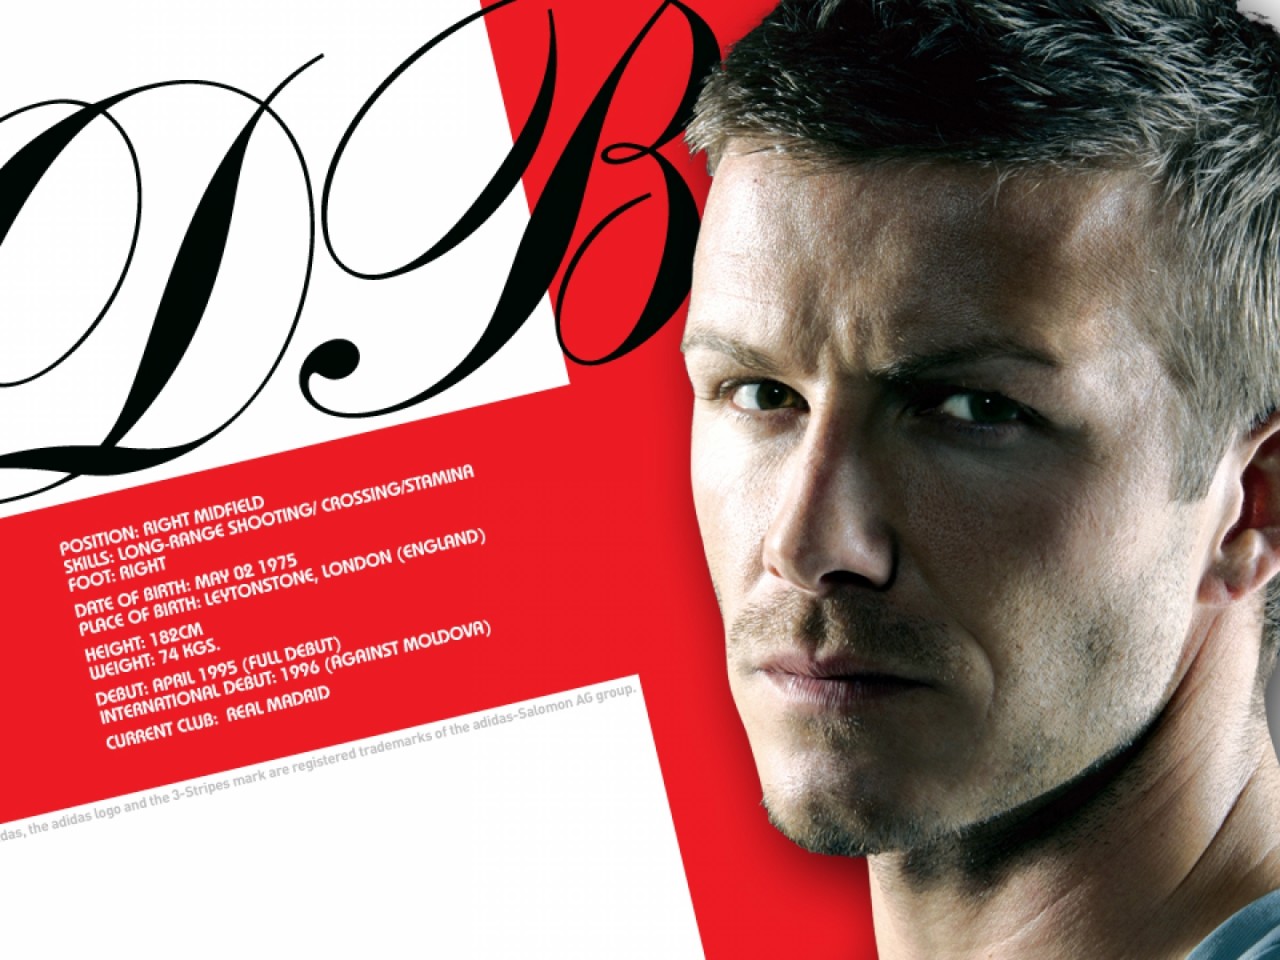 David Beckham Soccer Wallpaper - High Definition, High Resolution HD  Wallpapers : High Definition, High Resolution HD Wallpapers